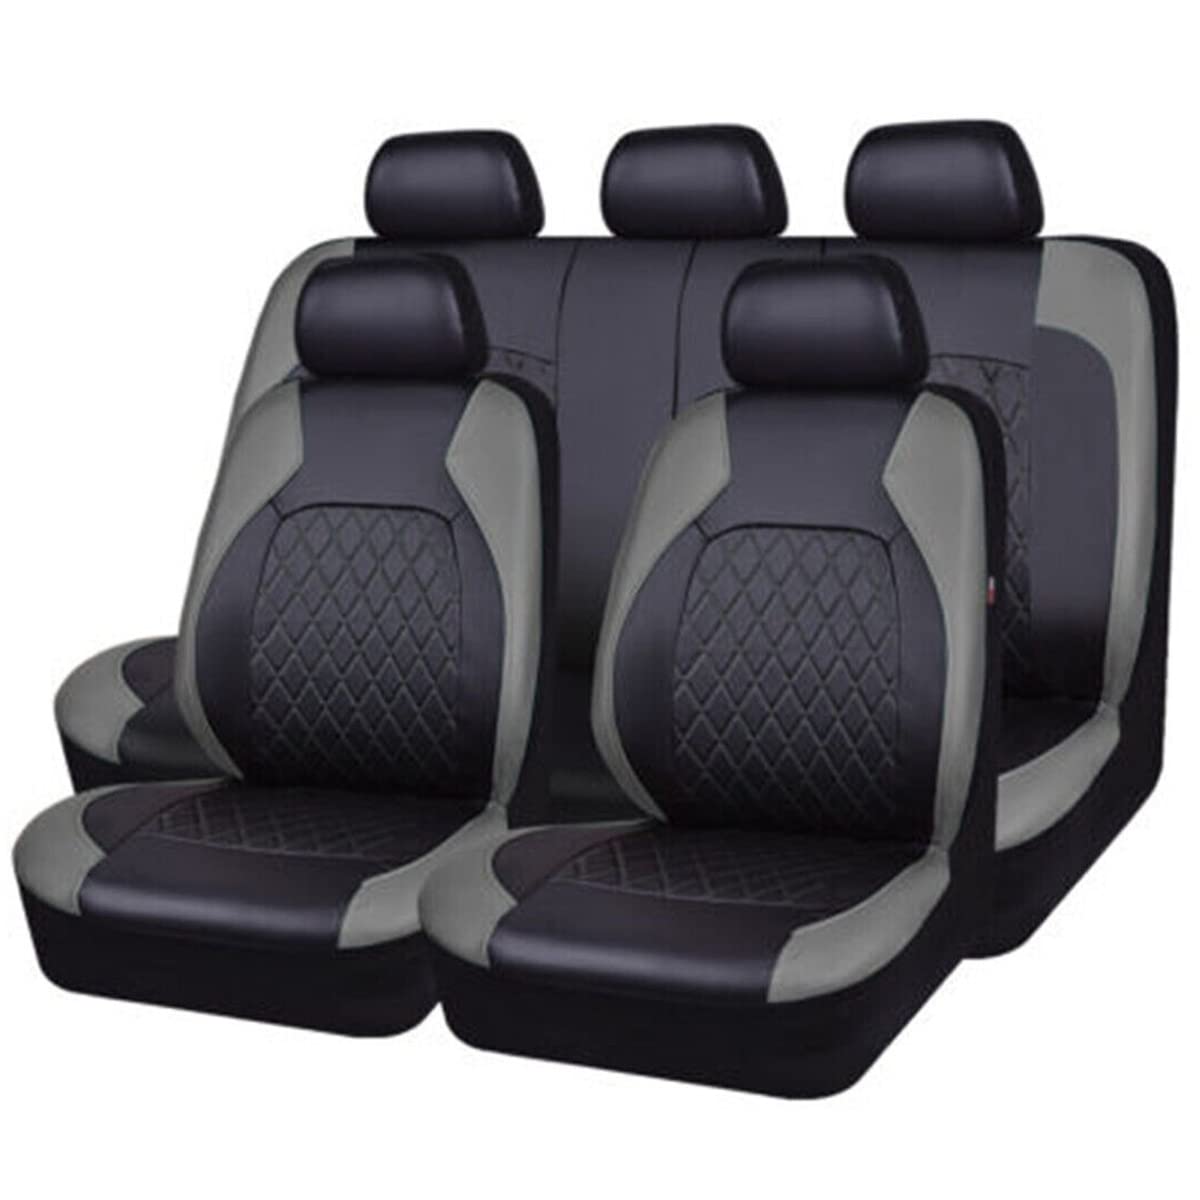 TEDE 9 PCS Auto-Sitzbezüge Set für Ford Mondeo’13 MK5 2013 2014 2015 2016,Leder Komplettset Sitzbezug für Auto Vordersitze Rücksitz,A/9pcs Set Grey von TEDE